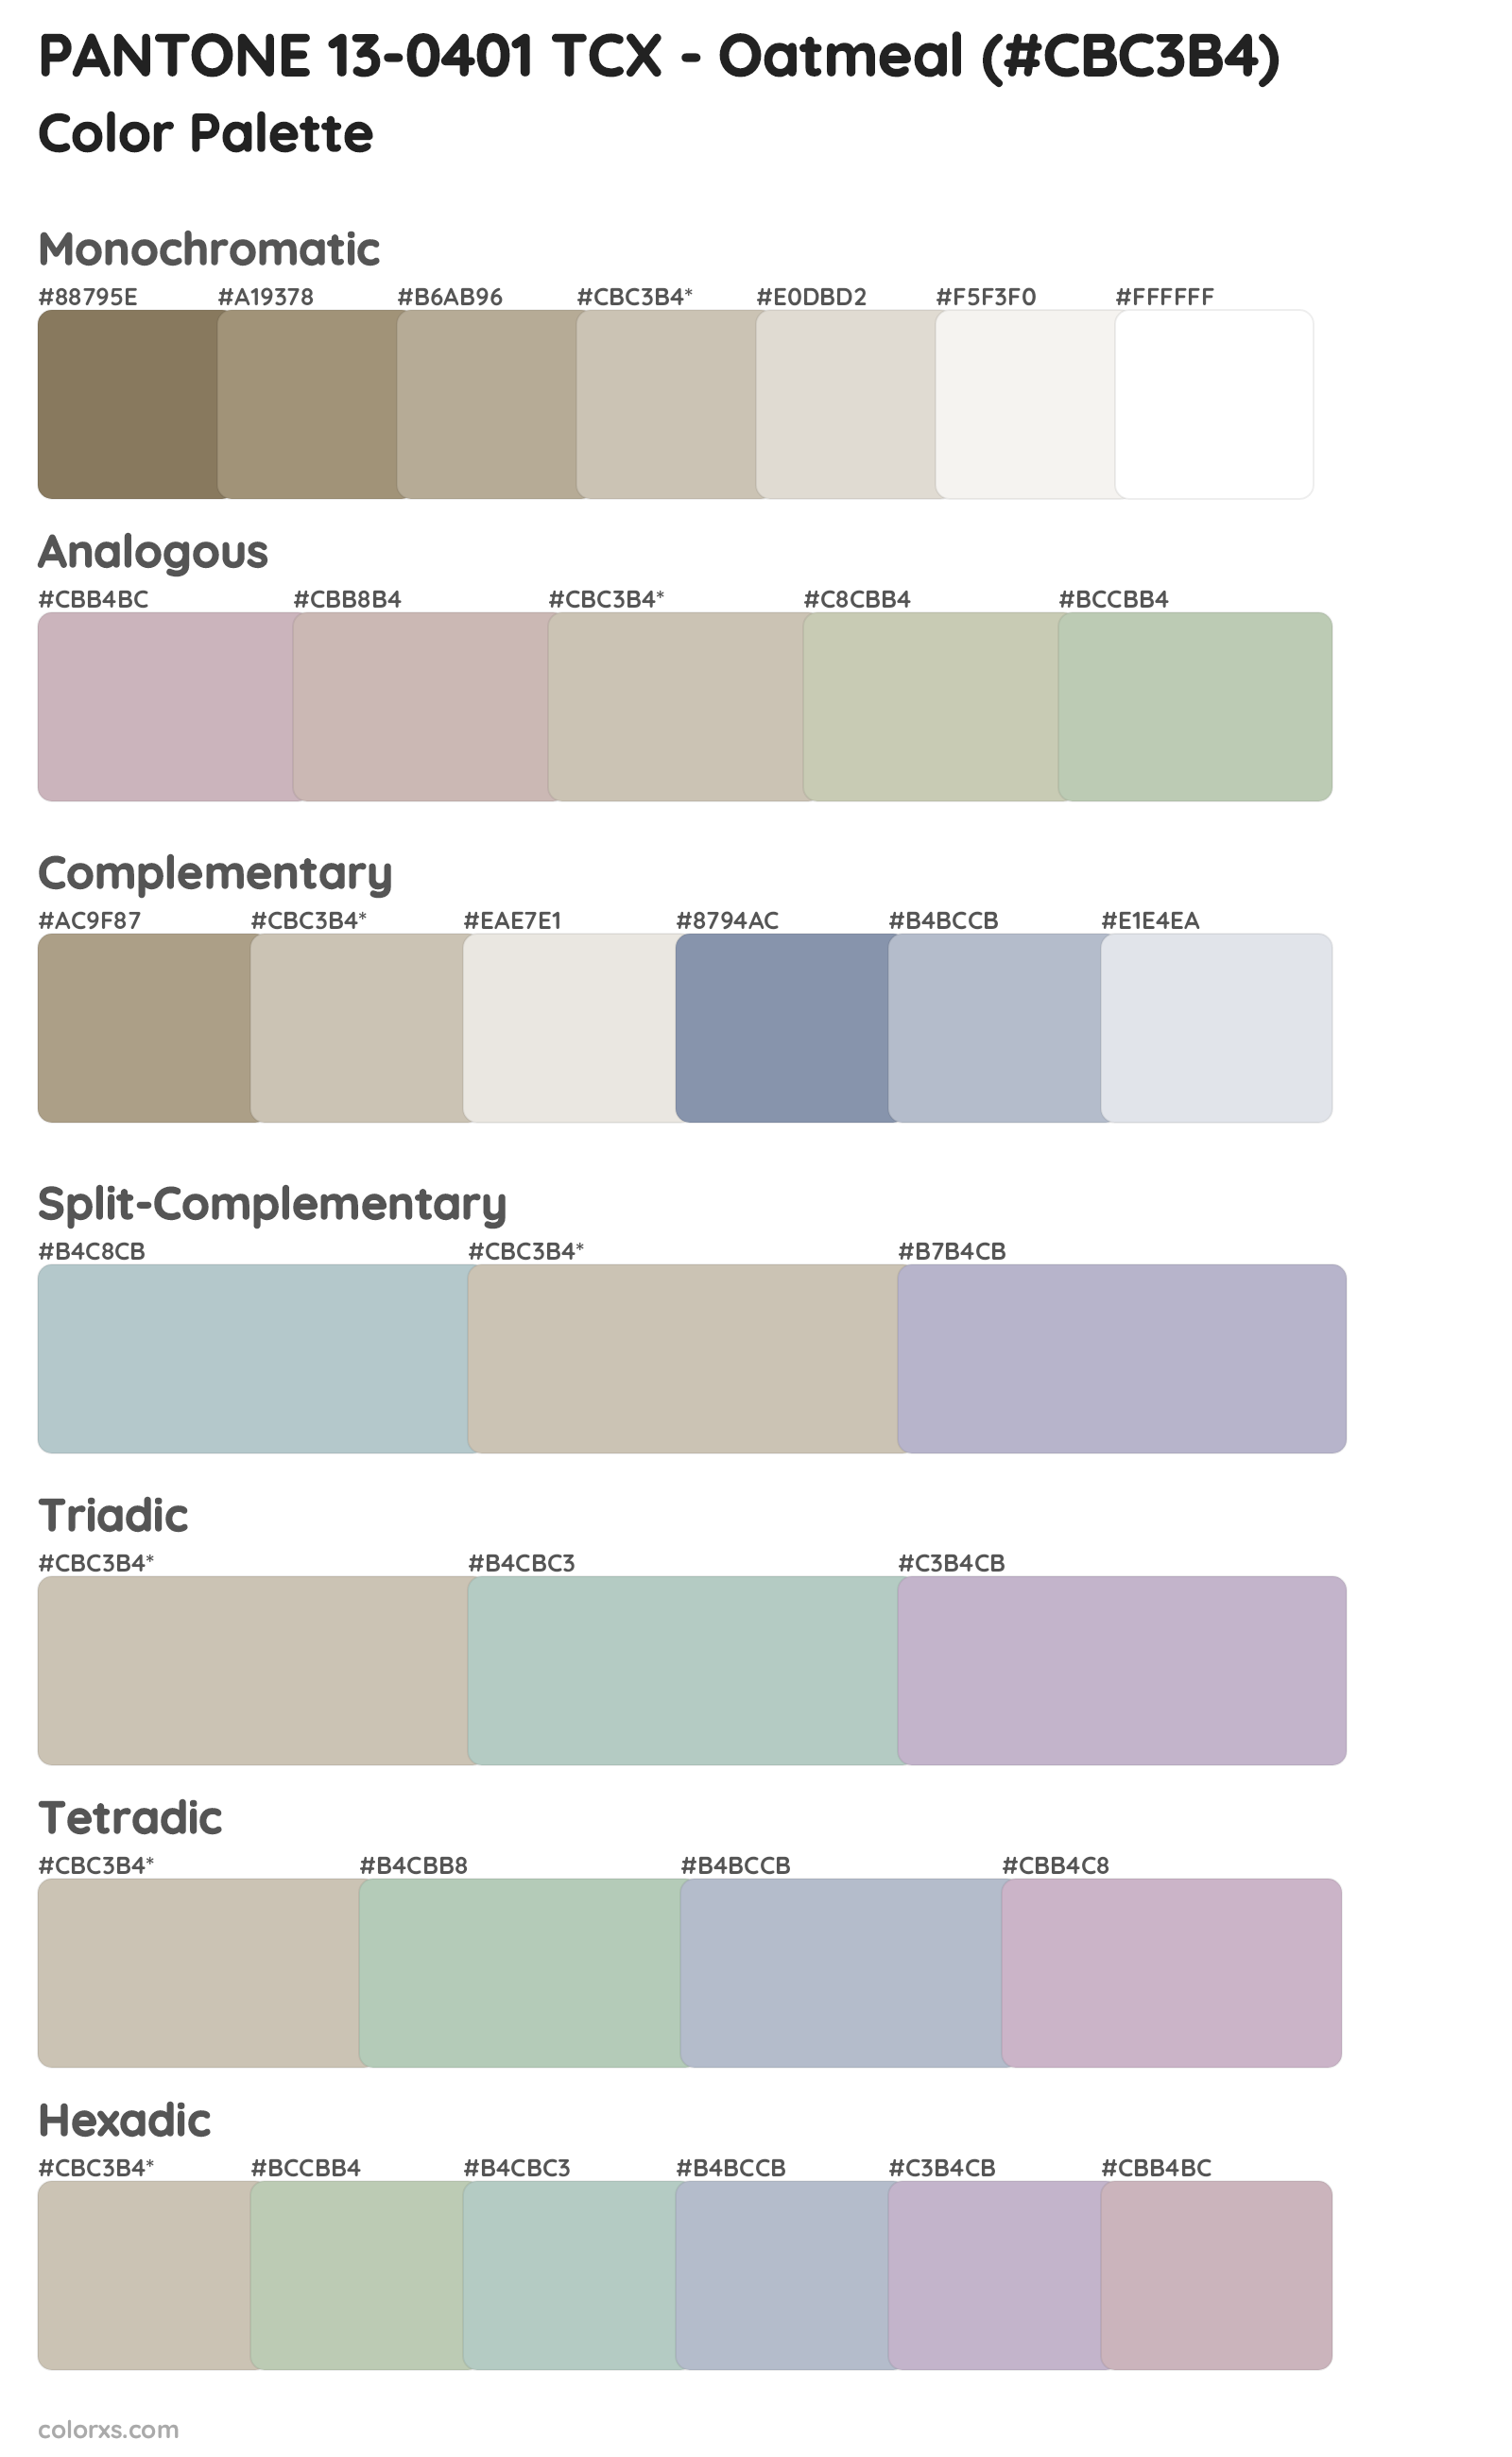 PANTONE 13-0401 TCX - Oatmeal Color Scheme Palettes